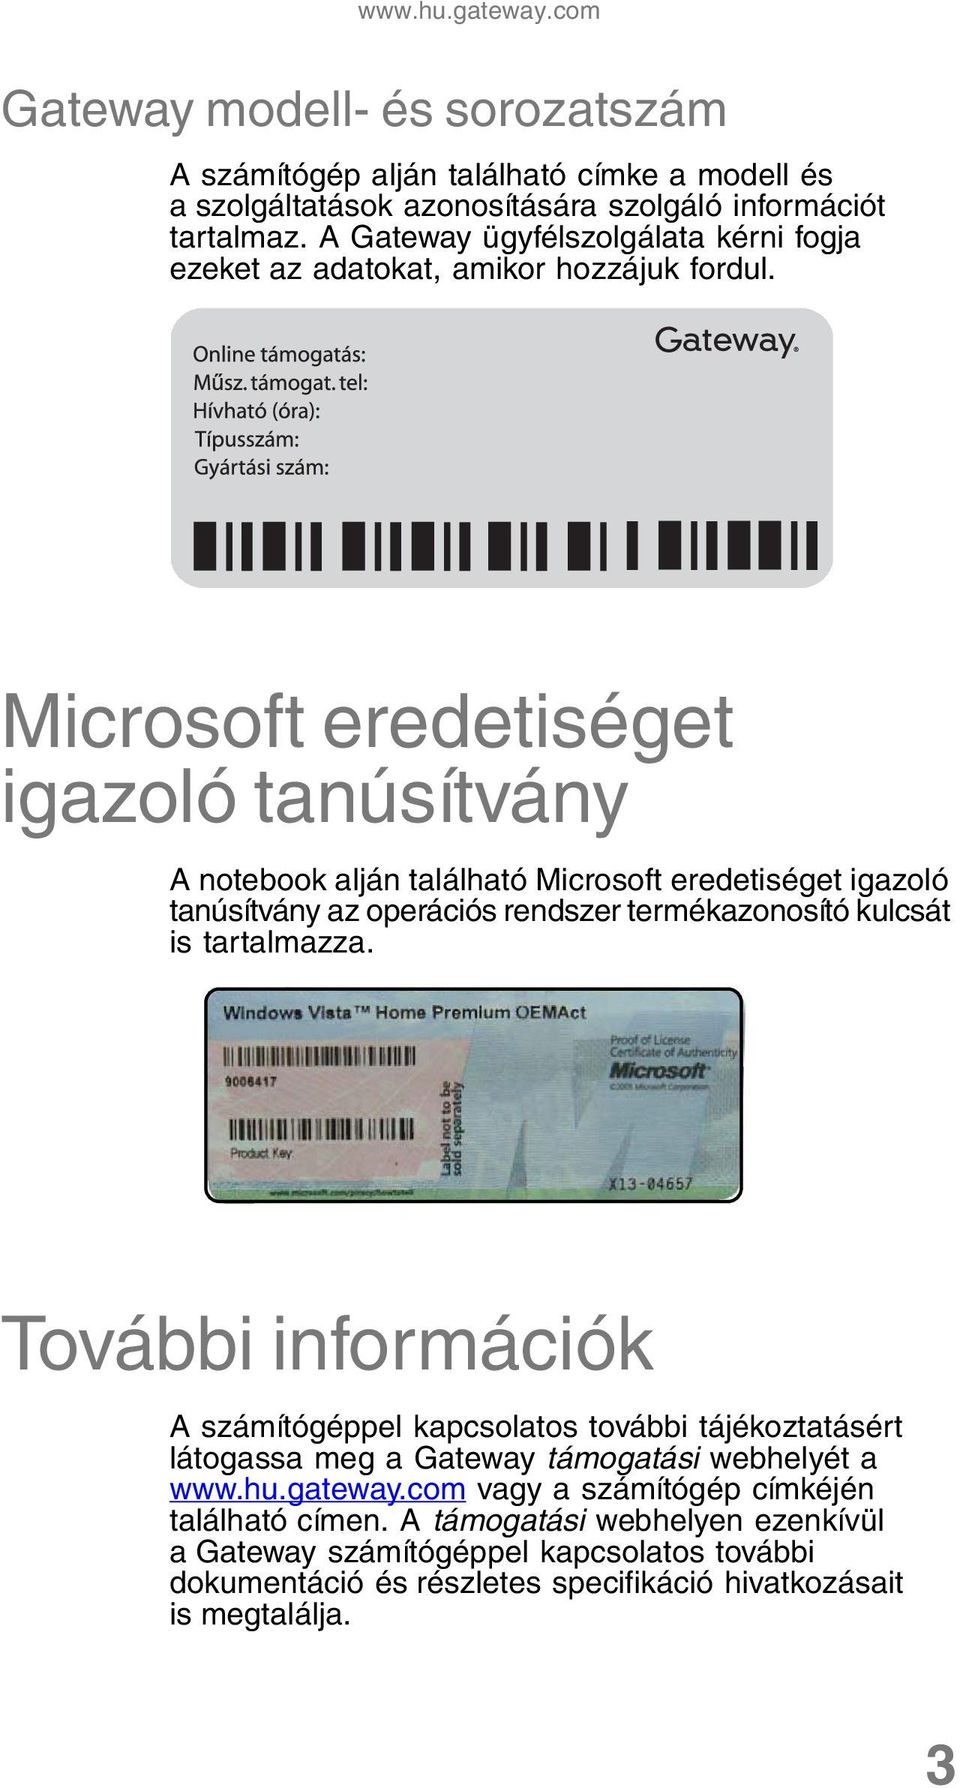 Microsoft eredetiséget igazoló tanúsítvány A notebook alján található Microsoft eredetiséget igazoló tanúsítvány az operációs rendszer termékazonosító kulcsát is tartalmazza.